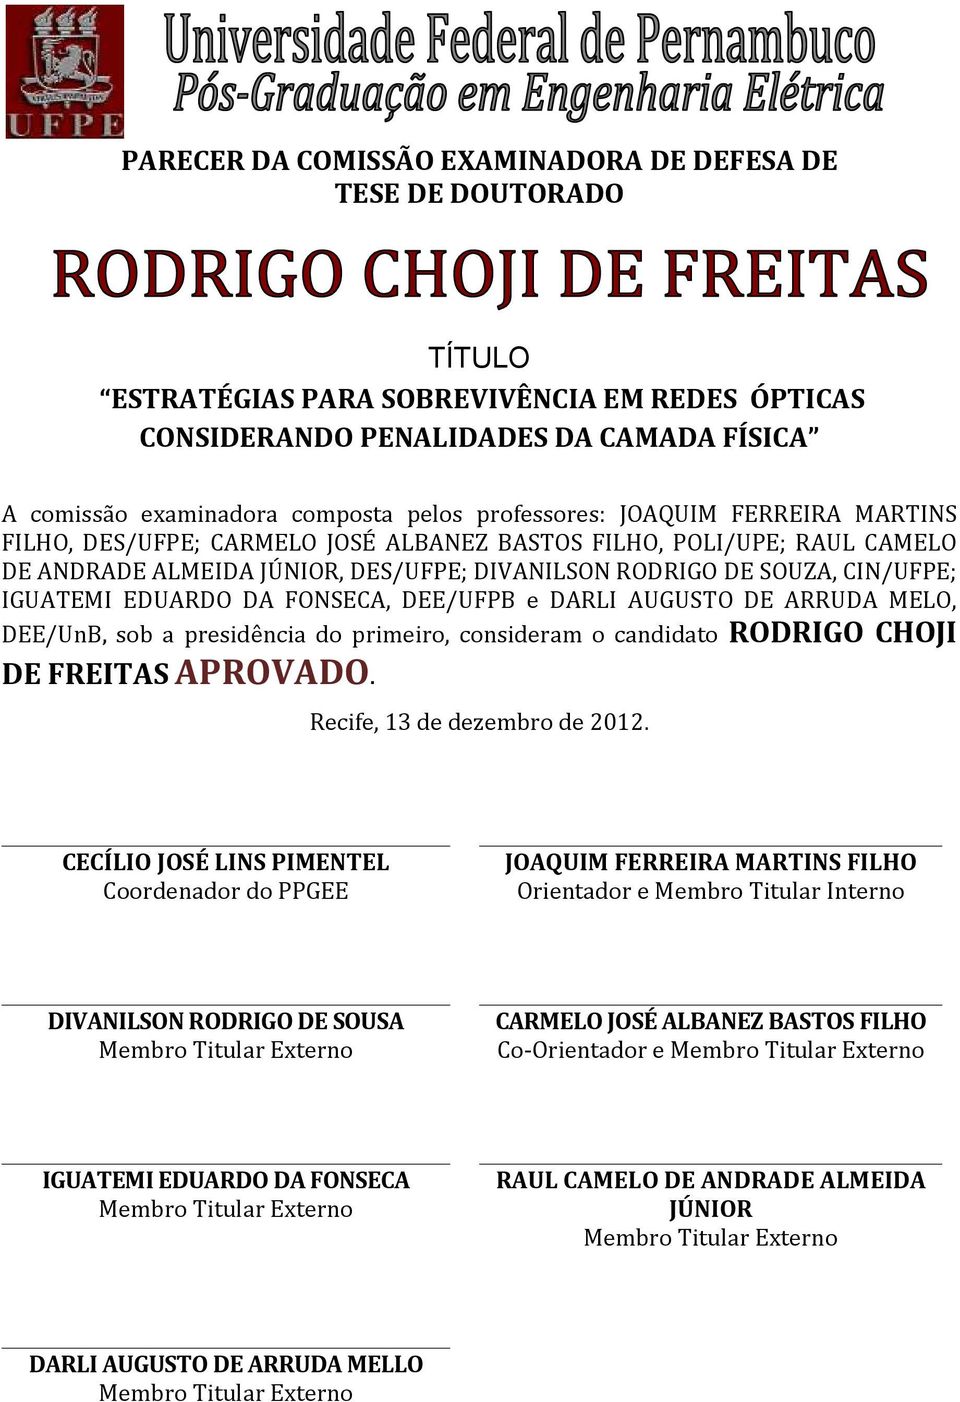 EDUARDO DA FONSECA, DEE/UFPB e DARLI AUGUSTO DE ARRUDA MELO, DEE/UnB, sob a presidência do primeiro, consideram o candidato RODRIGO CHOJI DE FREITAS APROVADO. Recife, 13 de dezembro de 2012.